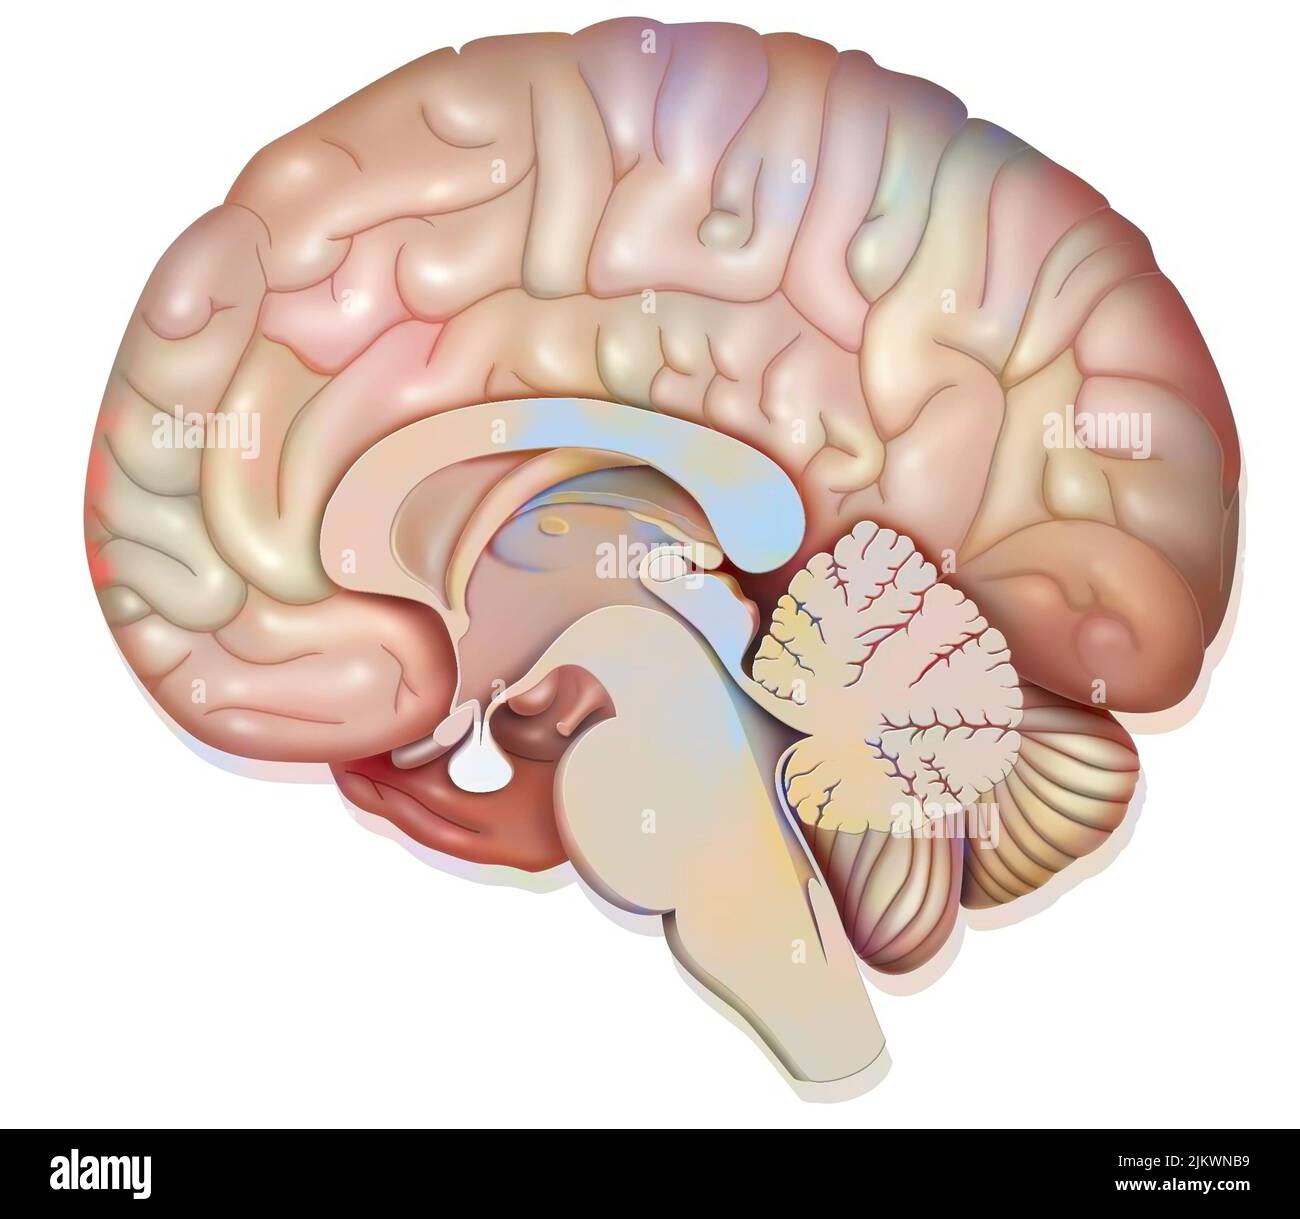 Medianer sagittaler Abschnitt des menschlichen Gehirns, der die Hypophyse zeigt. Stockfoto